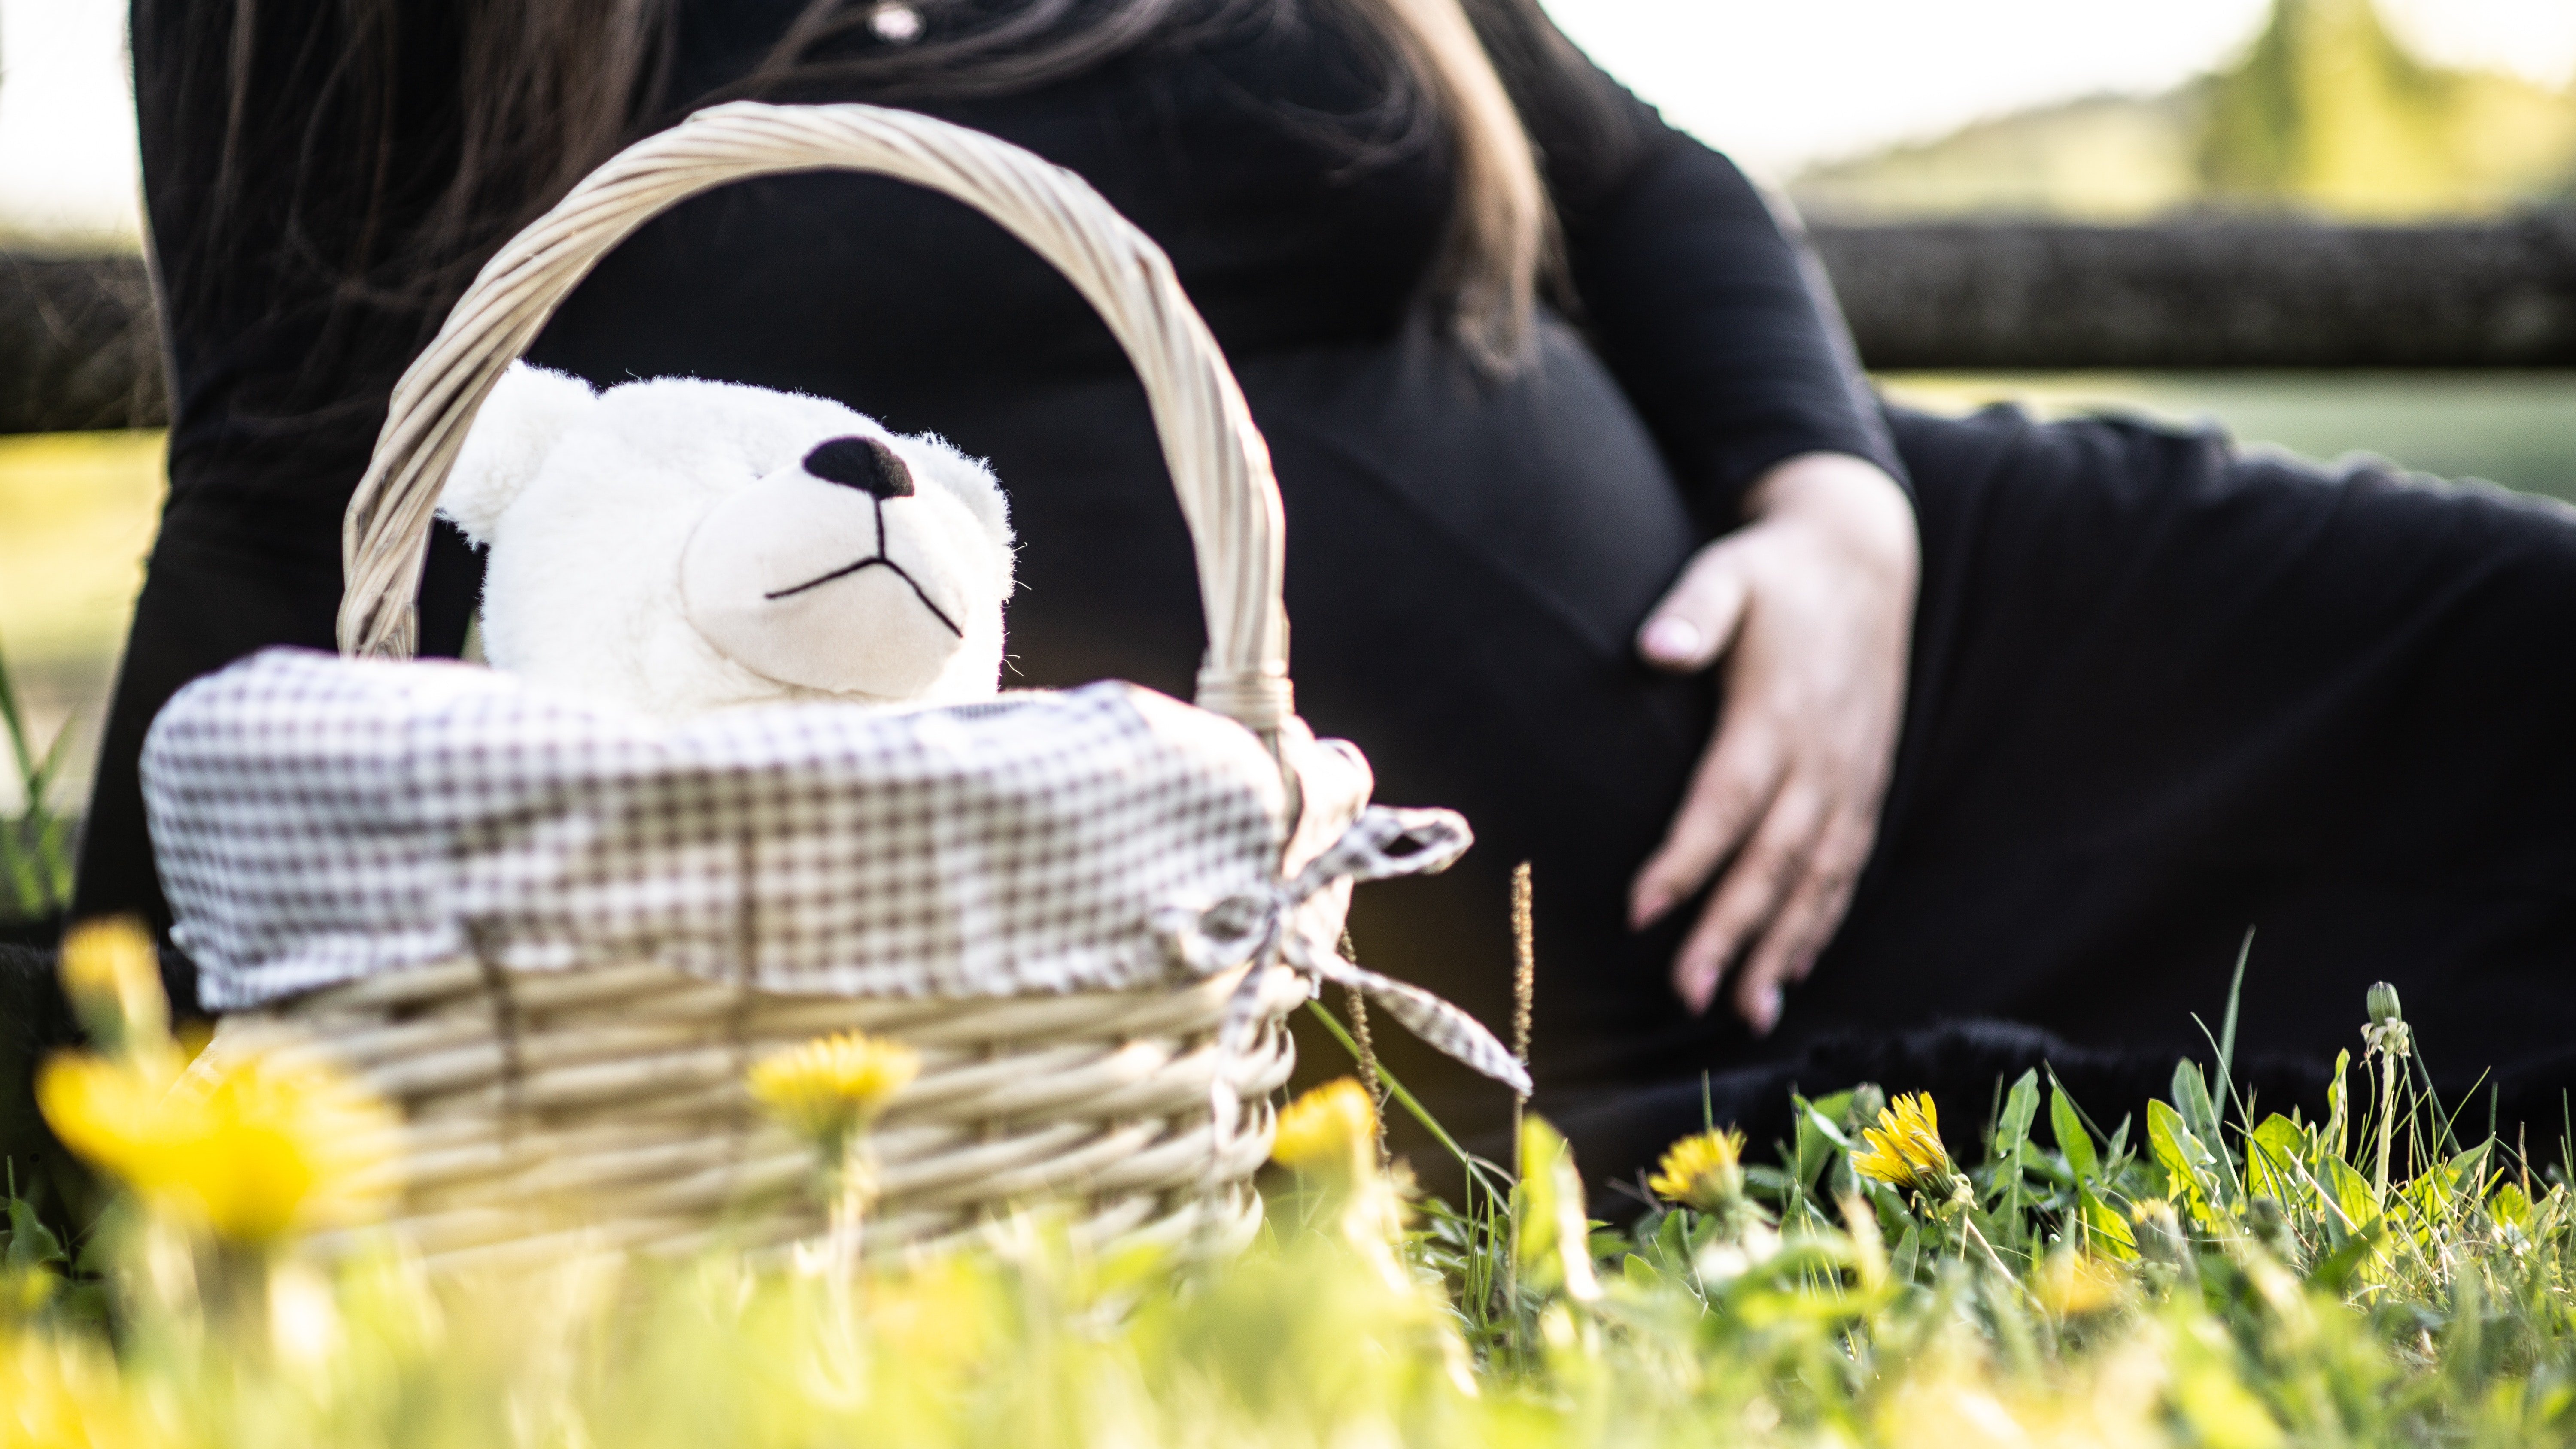 Femme enceinte assise sur l'herbe près d'un panier de pique-nique. | Source : Pexels